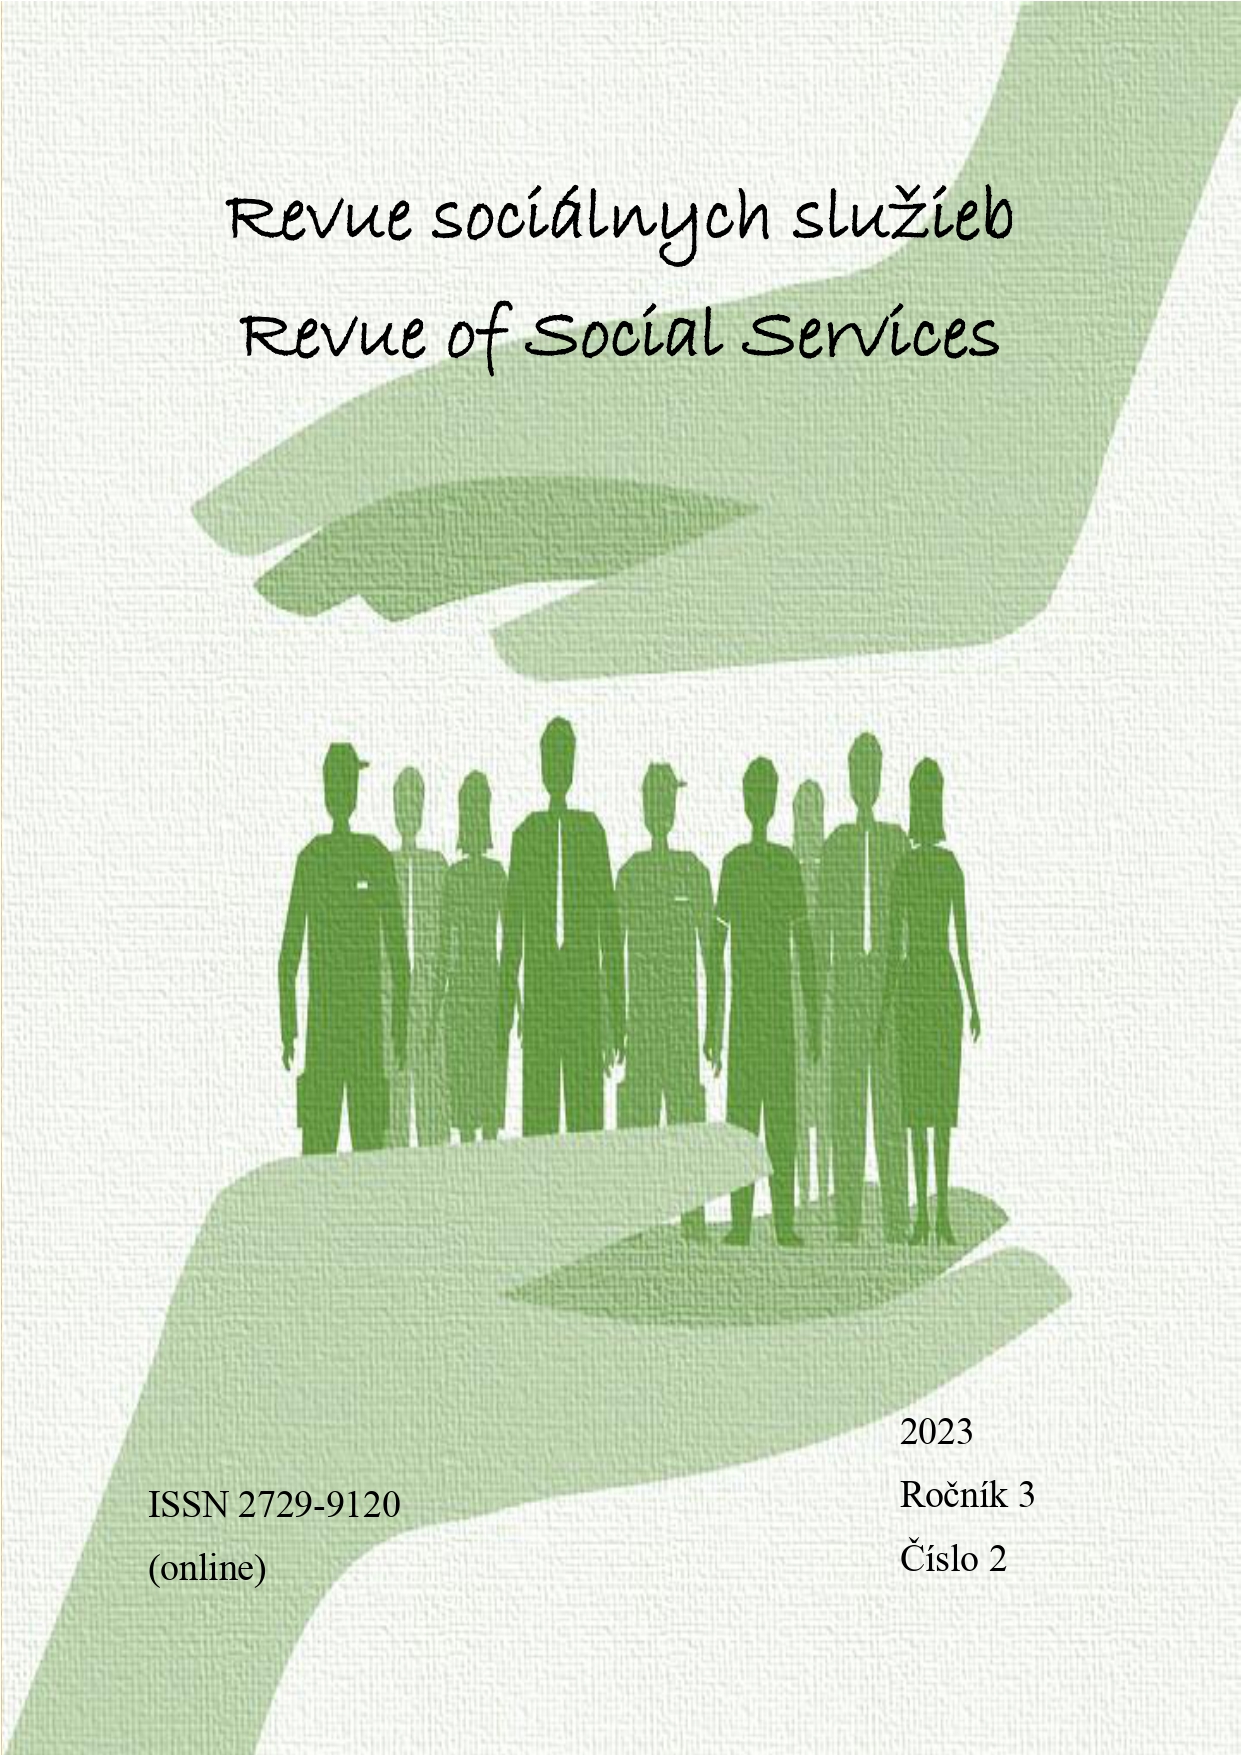 					View Vol. 3 No. 2 (2023): Revue of Social Services/Revue sociálnych služieb
				